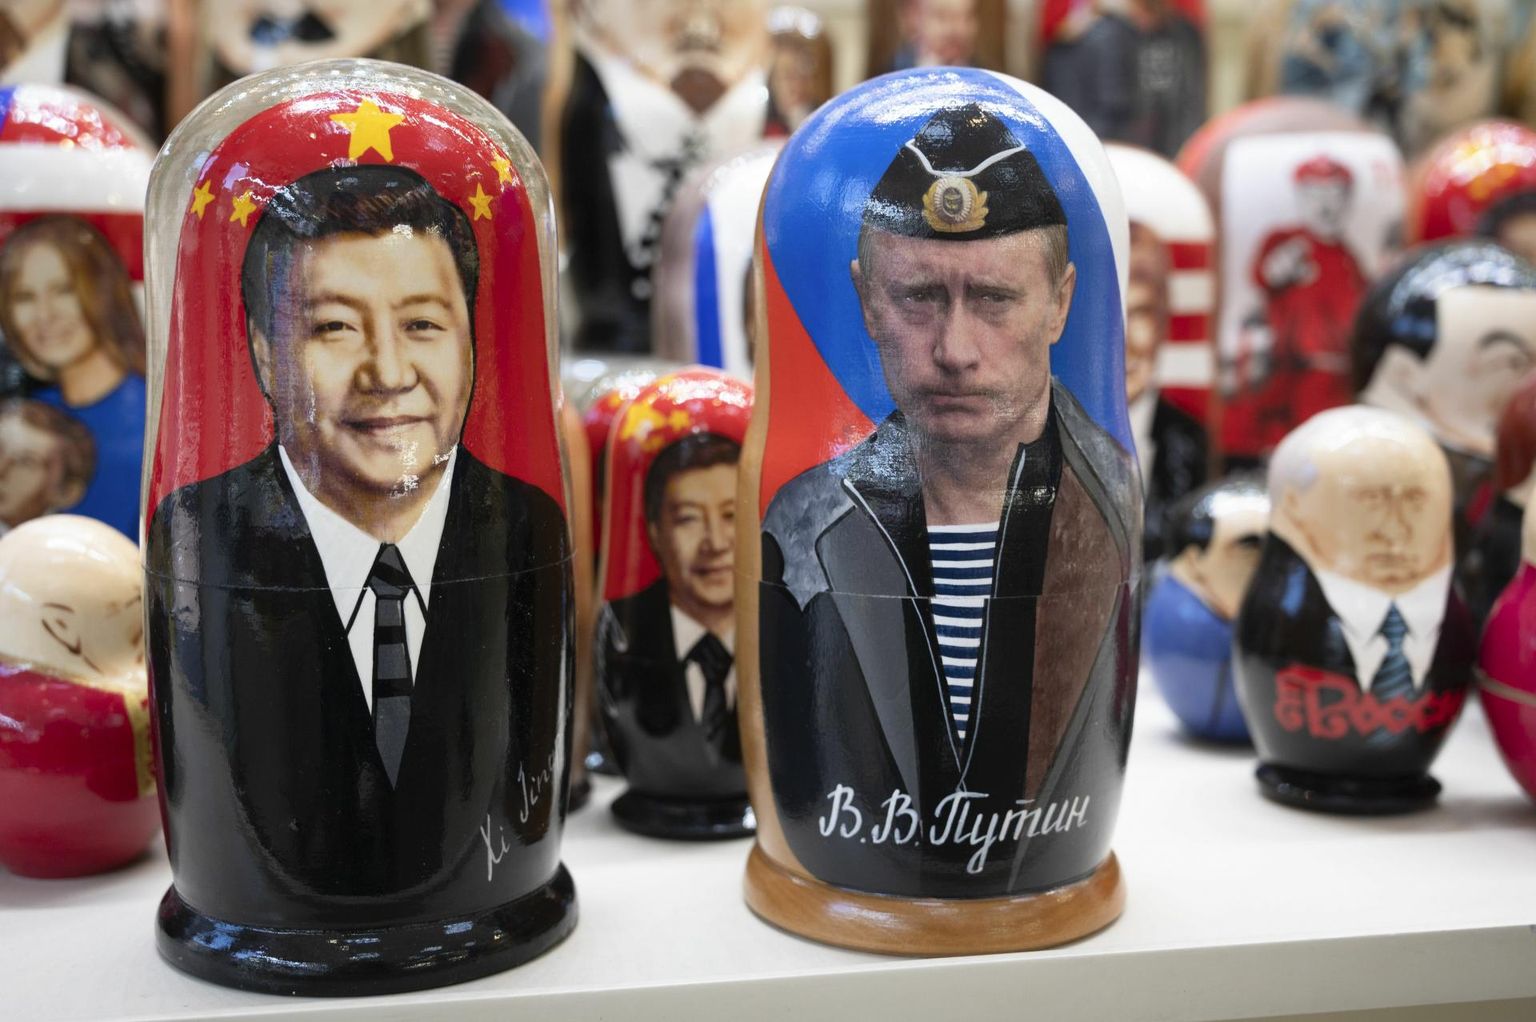 Hiina presidendi Xi Jinpingi ja Vladimir Putini piltidega matrjoškad Moskva suveniiripoes.